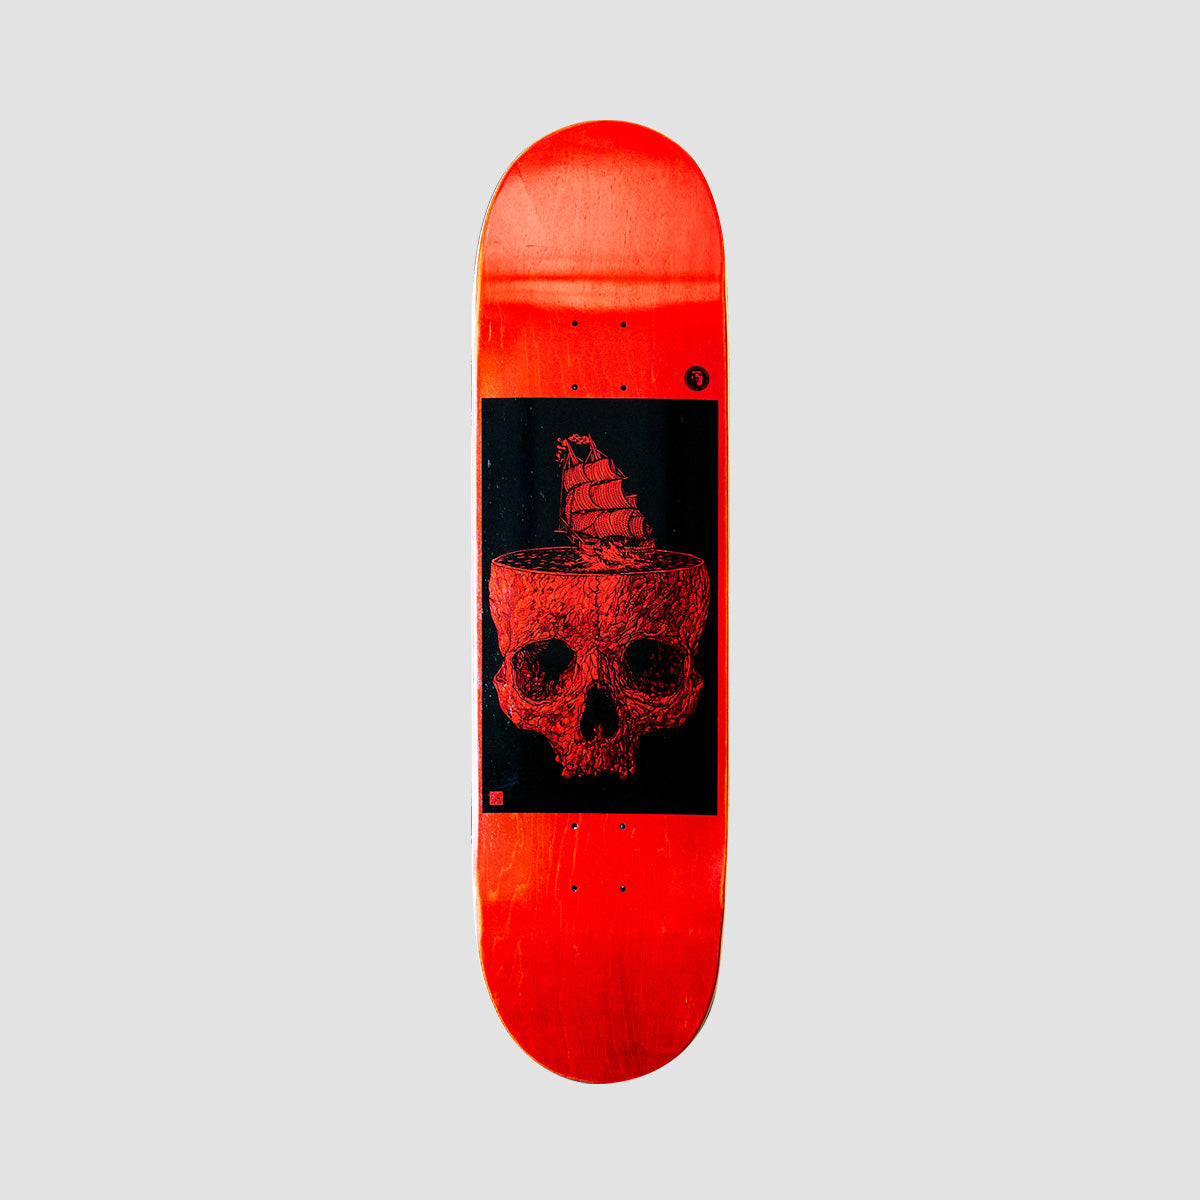 Heathen Stormy Seas on Taperhead Skateboard Deck Red - 8.5"